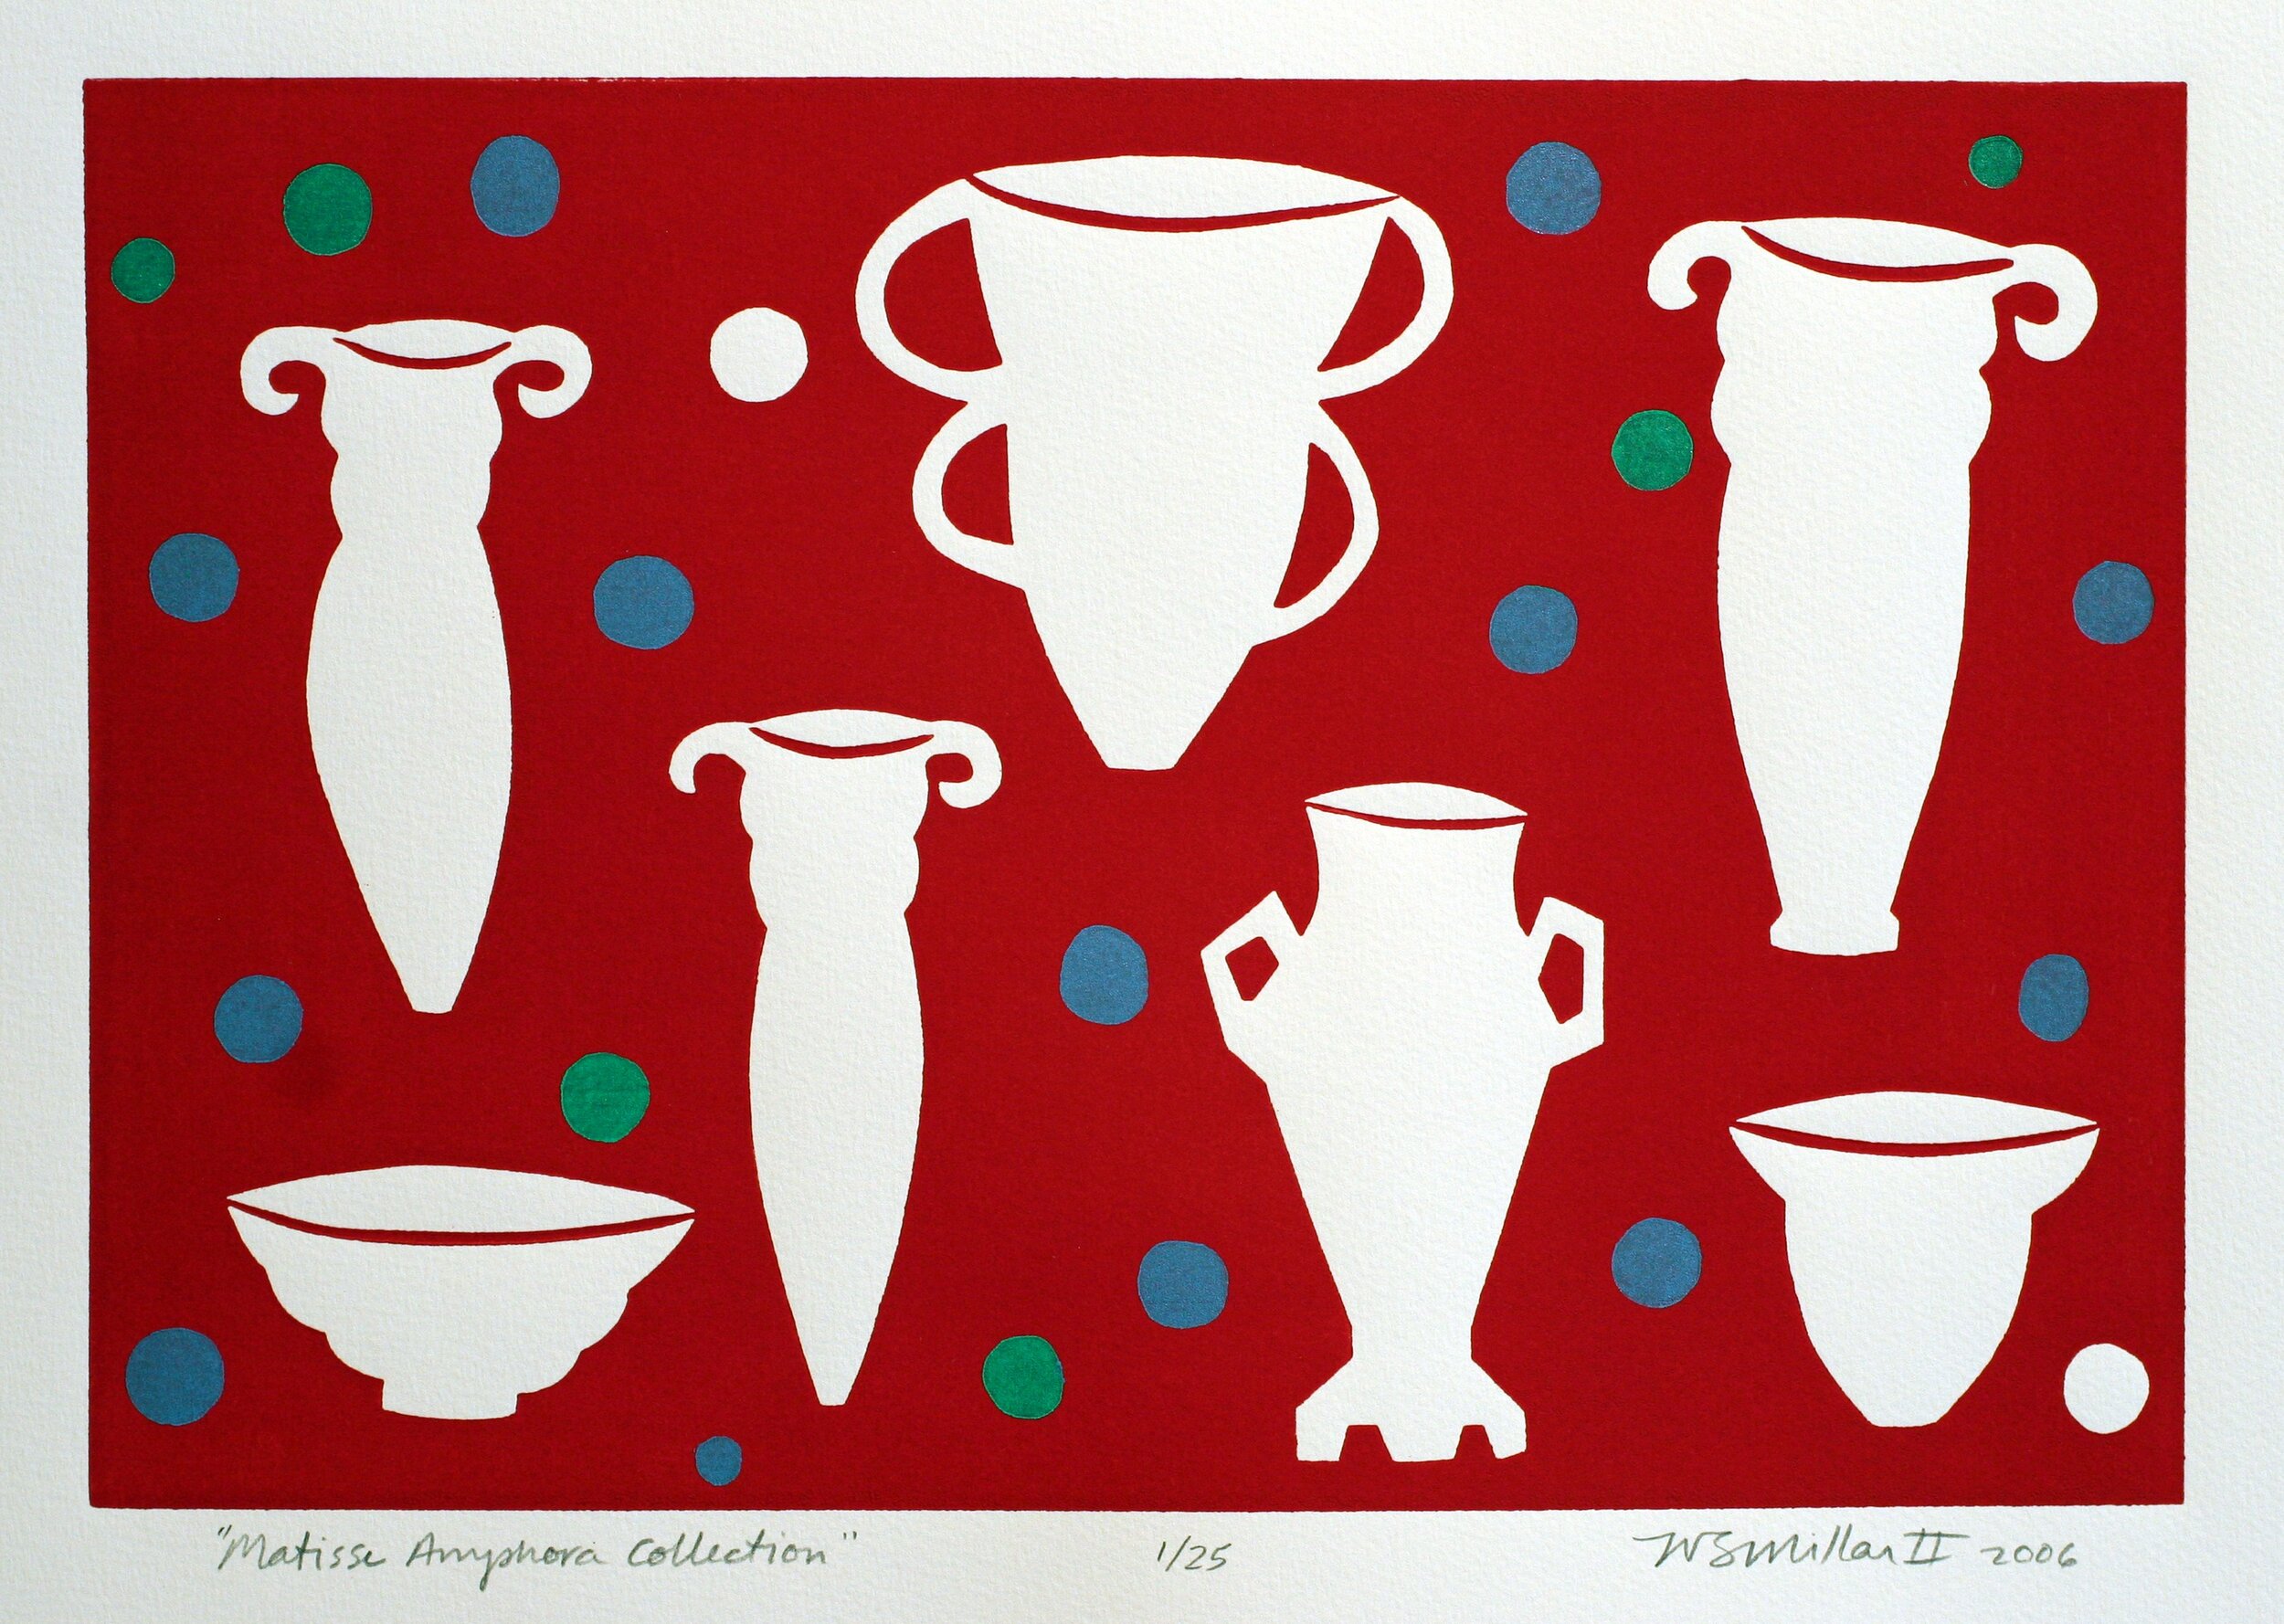 Matisse Amphora Collection by Leslie Van Stavern Millar